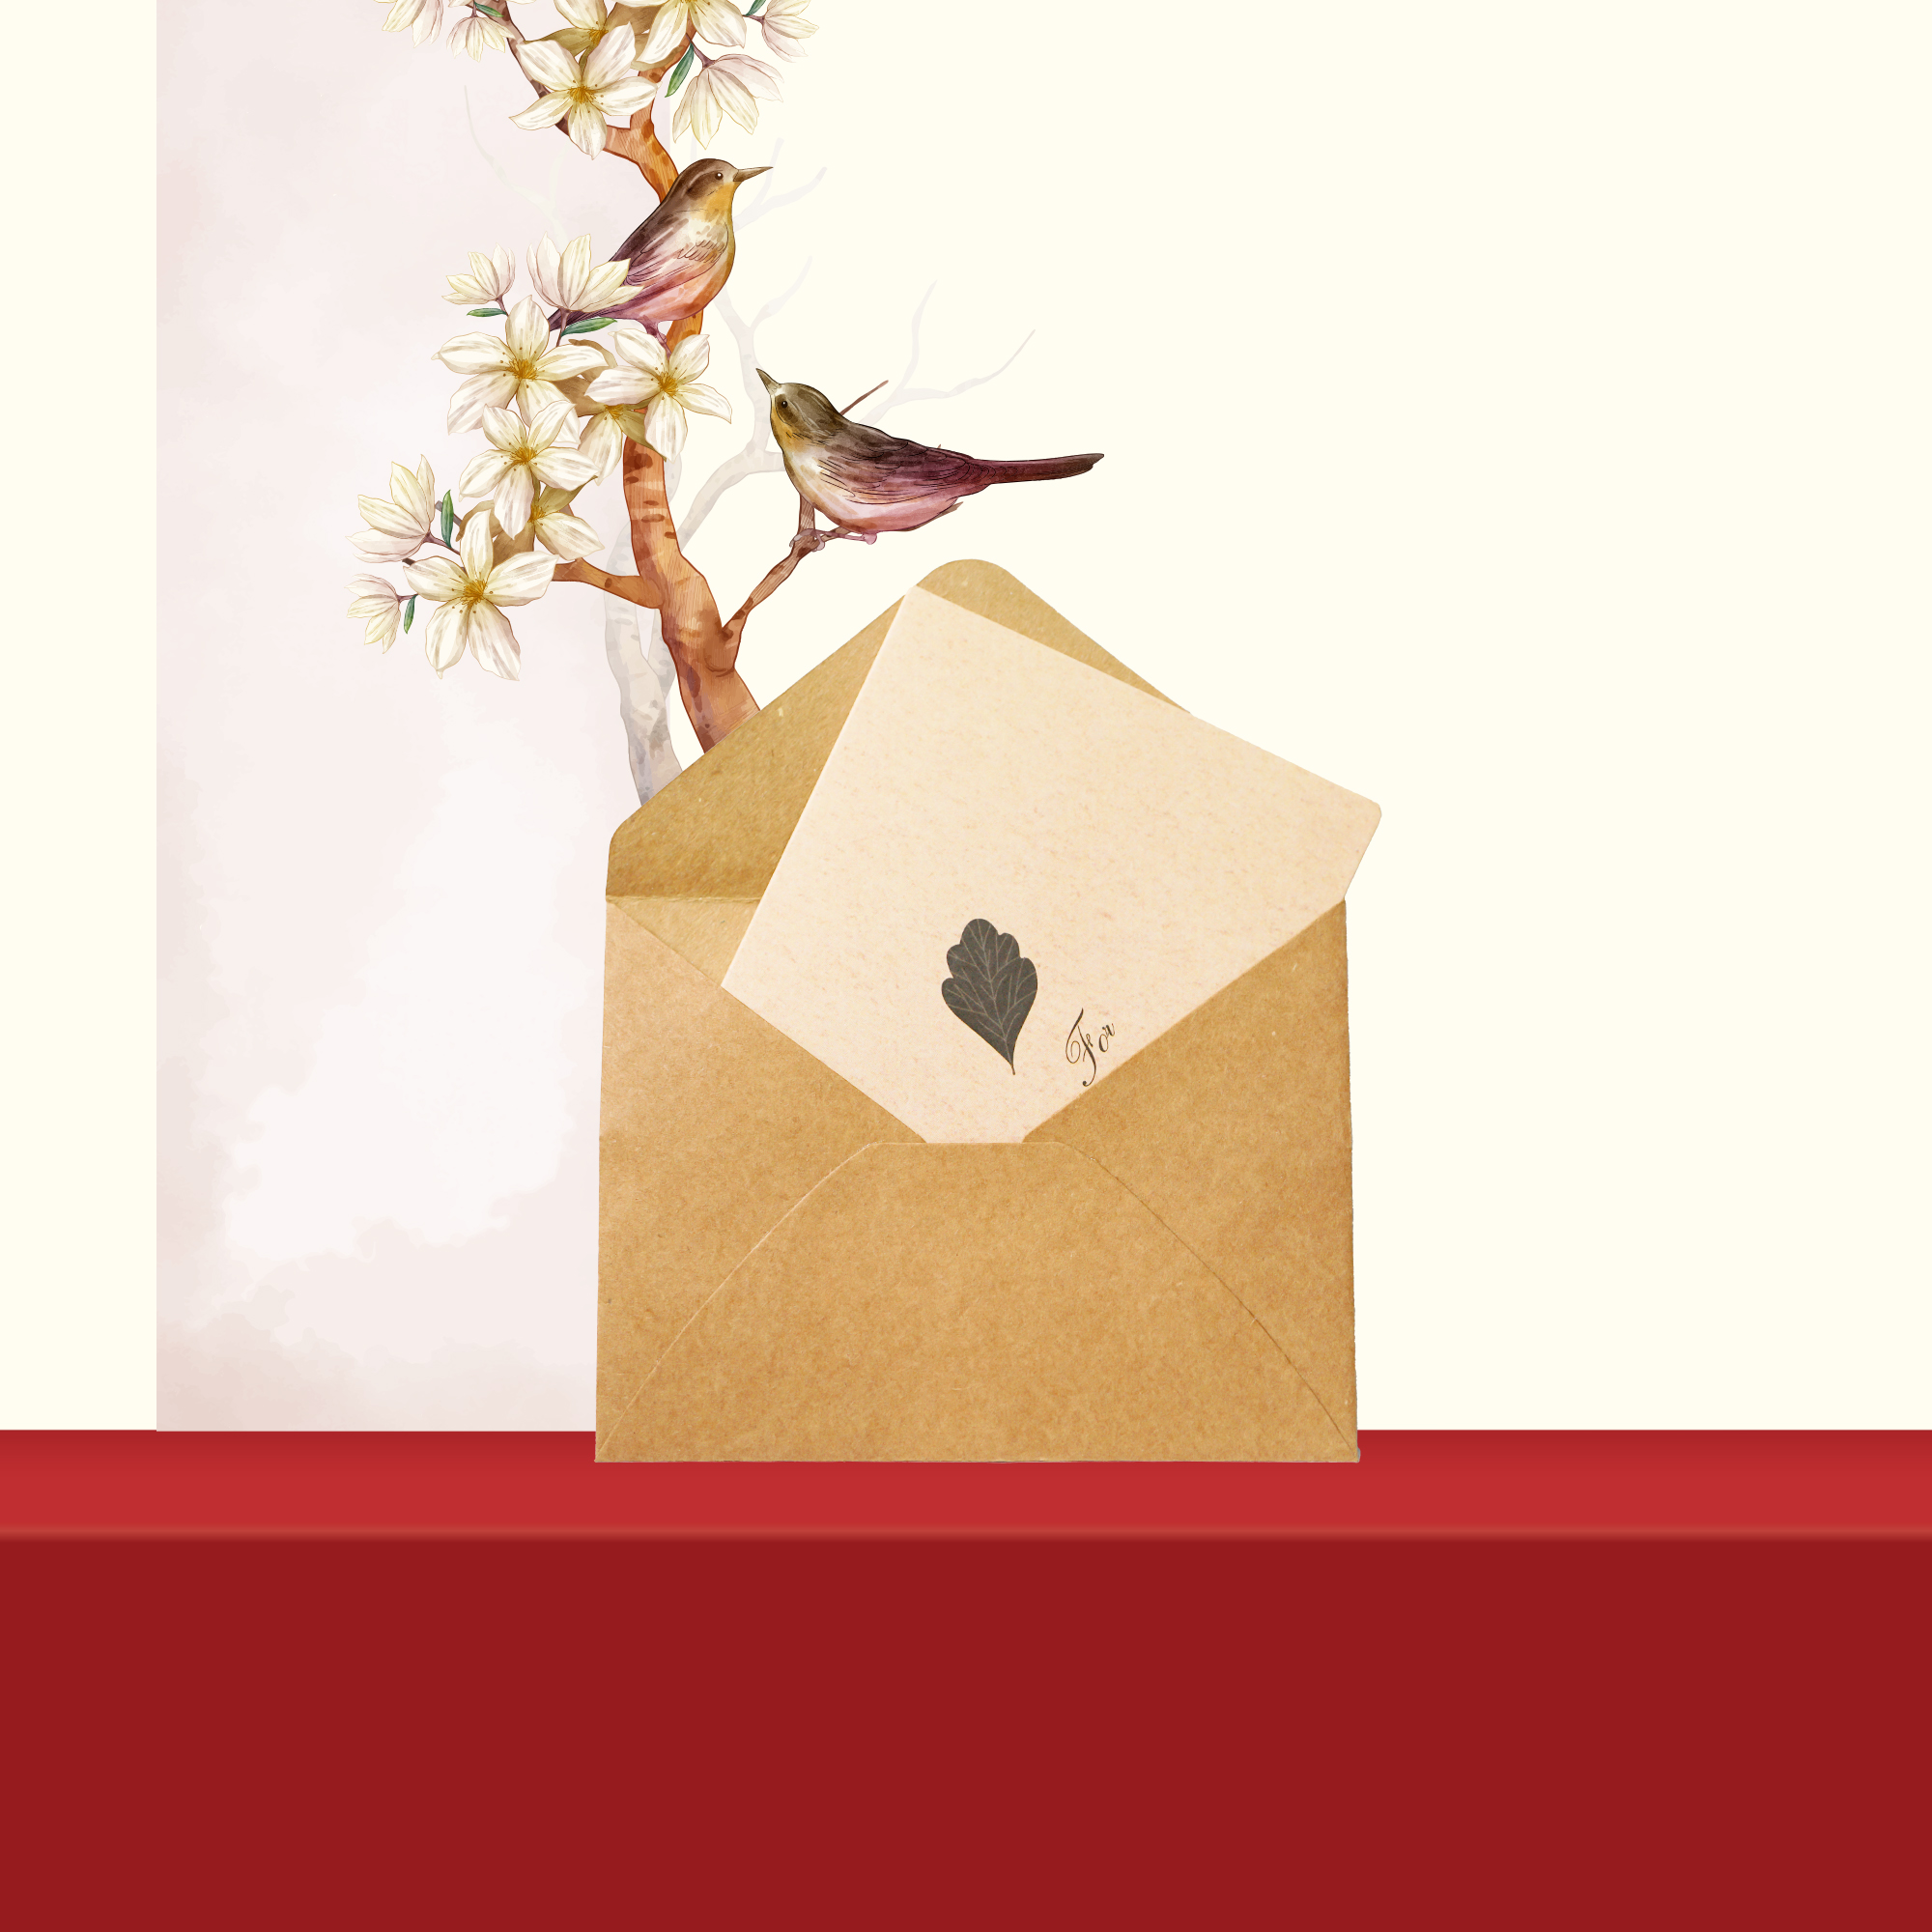 Set quà tặng, hộp quà tặng saffron mật ong đông trùng hạ thảo và táo đỏ / kỷ tử Kingdom Herb chính hãng (tặng kèm 1 que lấy mật + 1 bình thuỷ tinh + 1 thiệp chúc + 1 túi giấy)